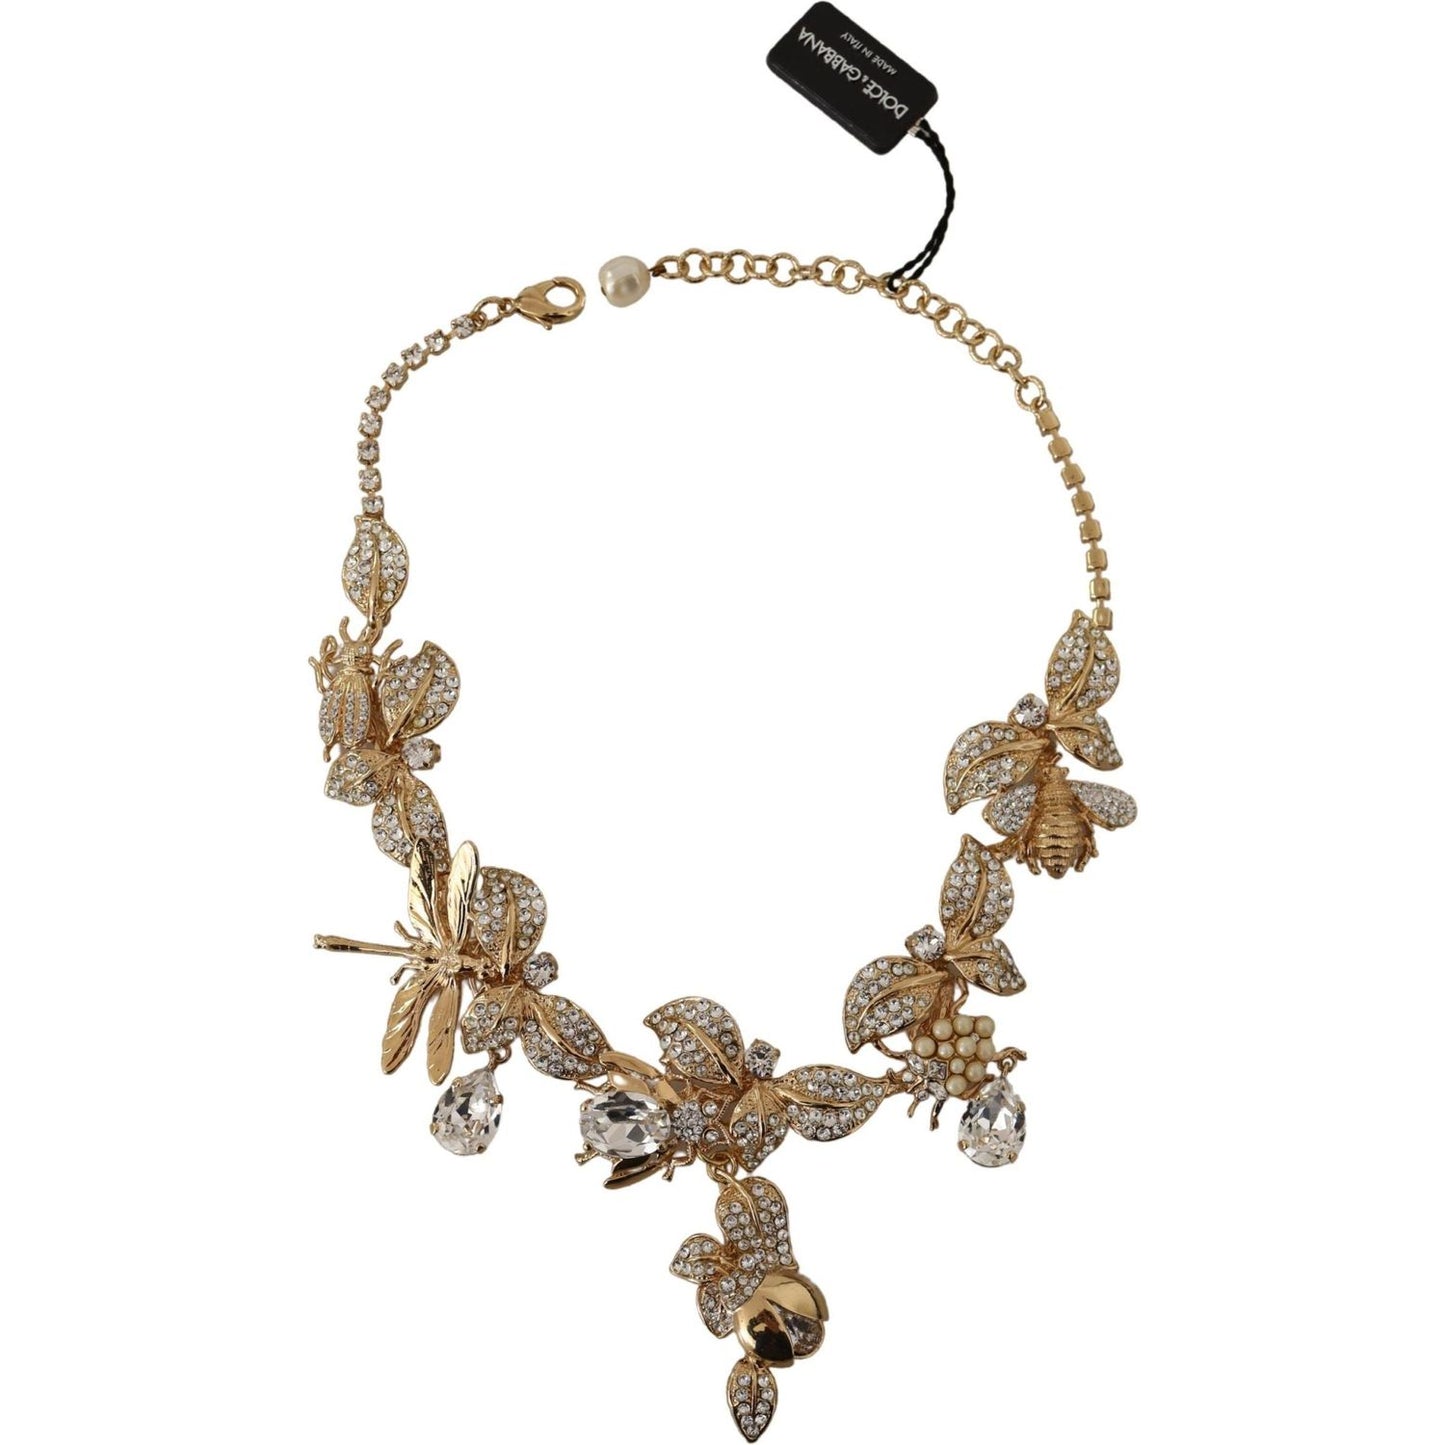 Dolce & Gabbana Elegant Sicily Floral Bug Statement Necklace gold-brass-floral-sicily-crystal-statement-necklace WOMAN NECKLACE IMG_1865-scaled-066e98ba-609.jpg